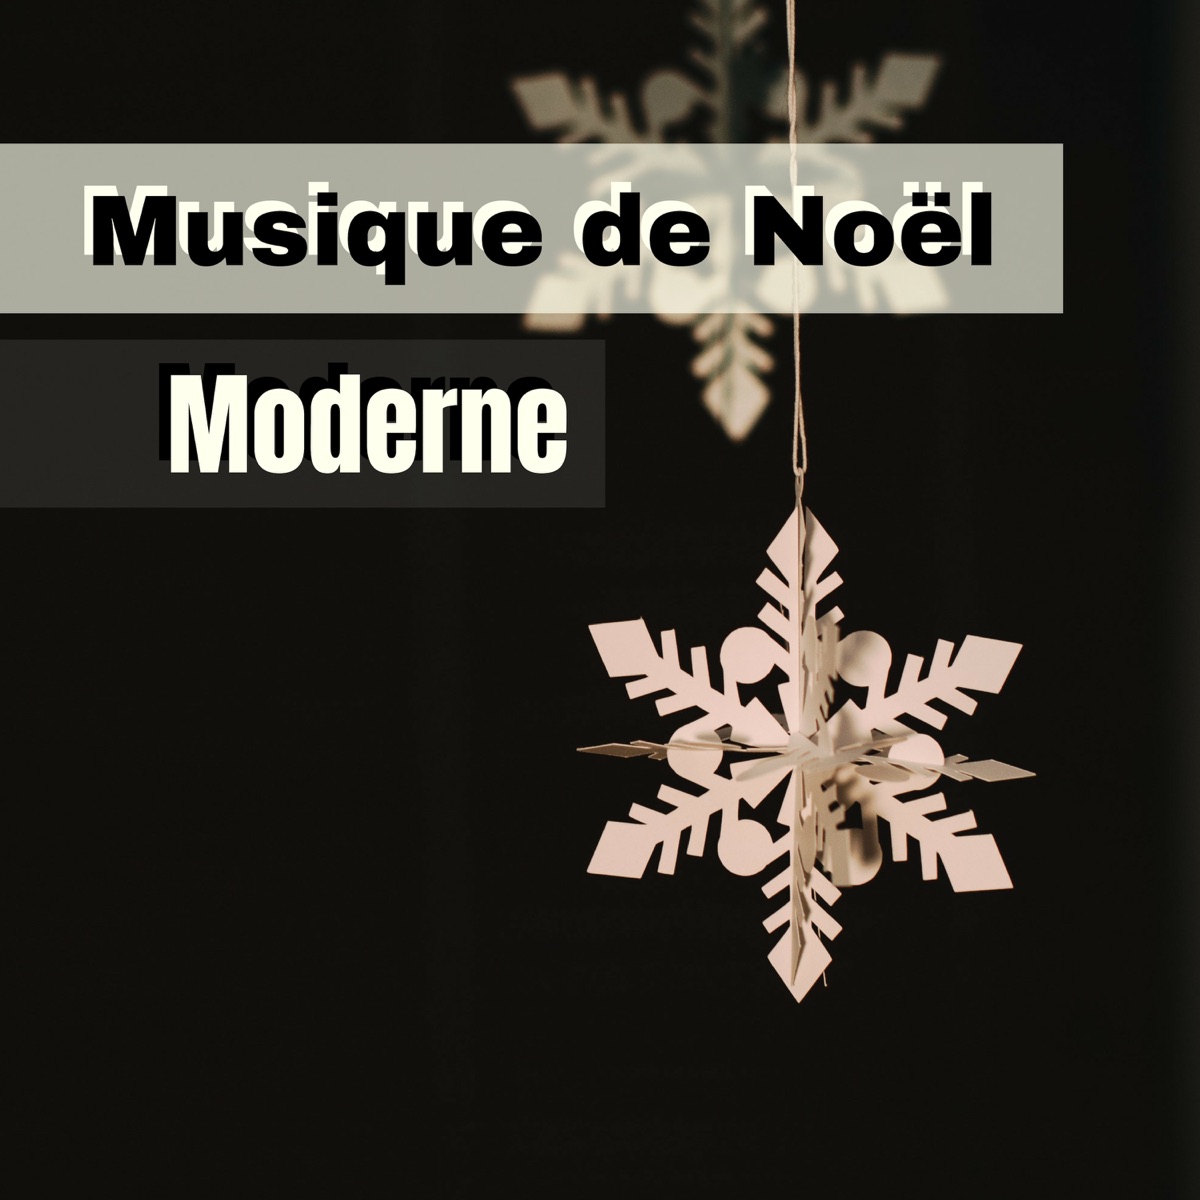 Musique de Noël Moderne - Compilation des plus belles chansons de Noël 2018  – Album par Chansons de Noel & Les Experts du Son de Noël – Apple Music